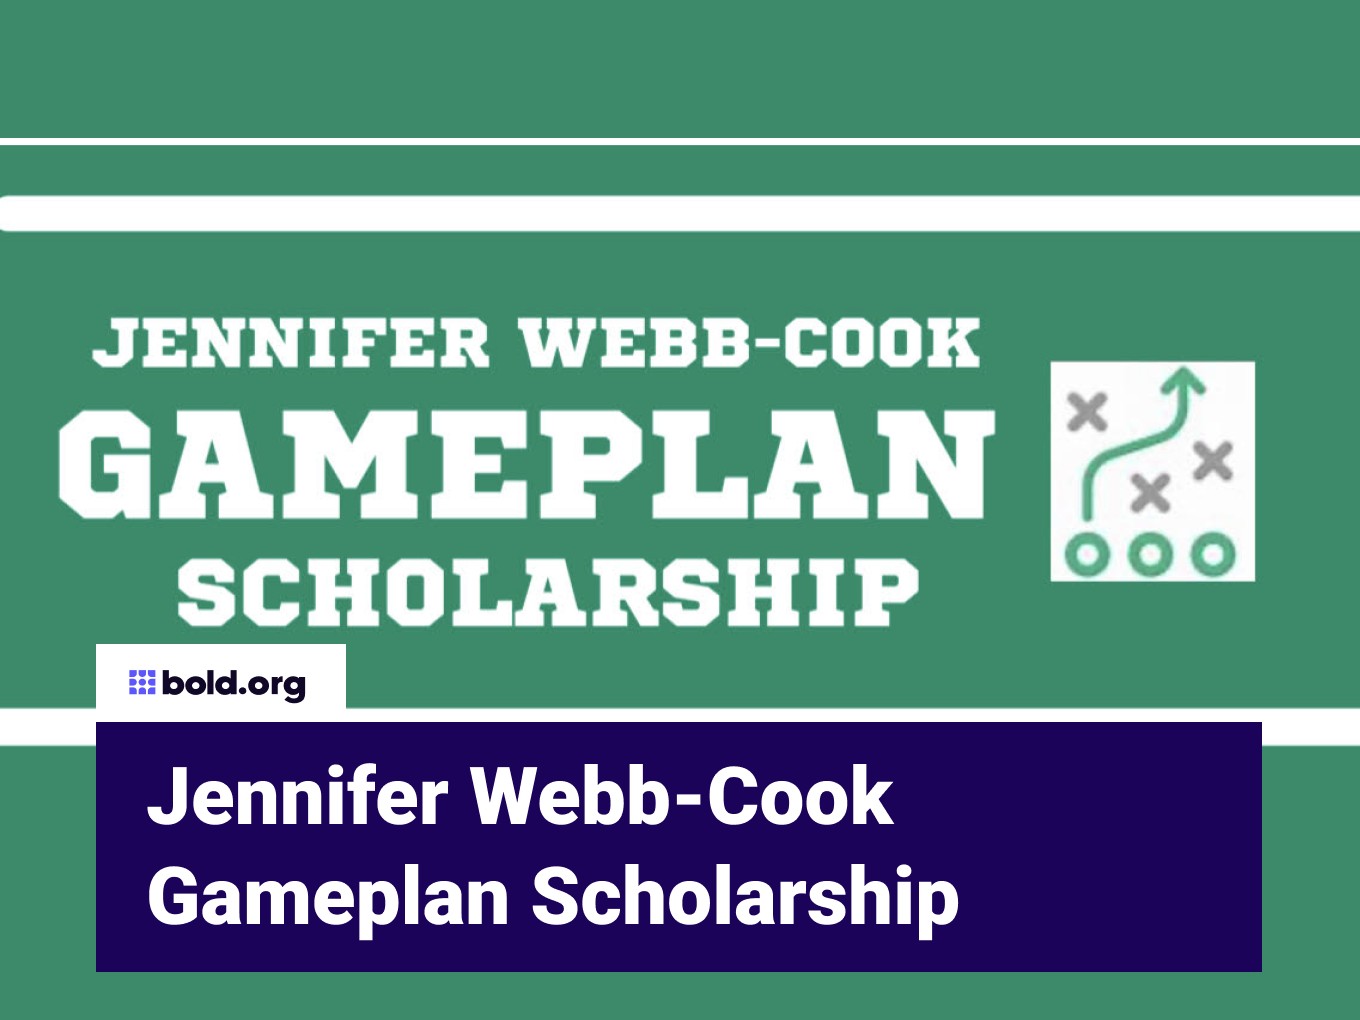 Jennifer Webb-Cook Gameplan Scholarship